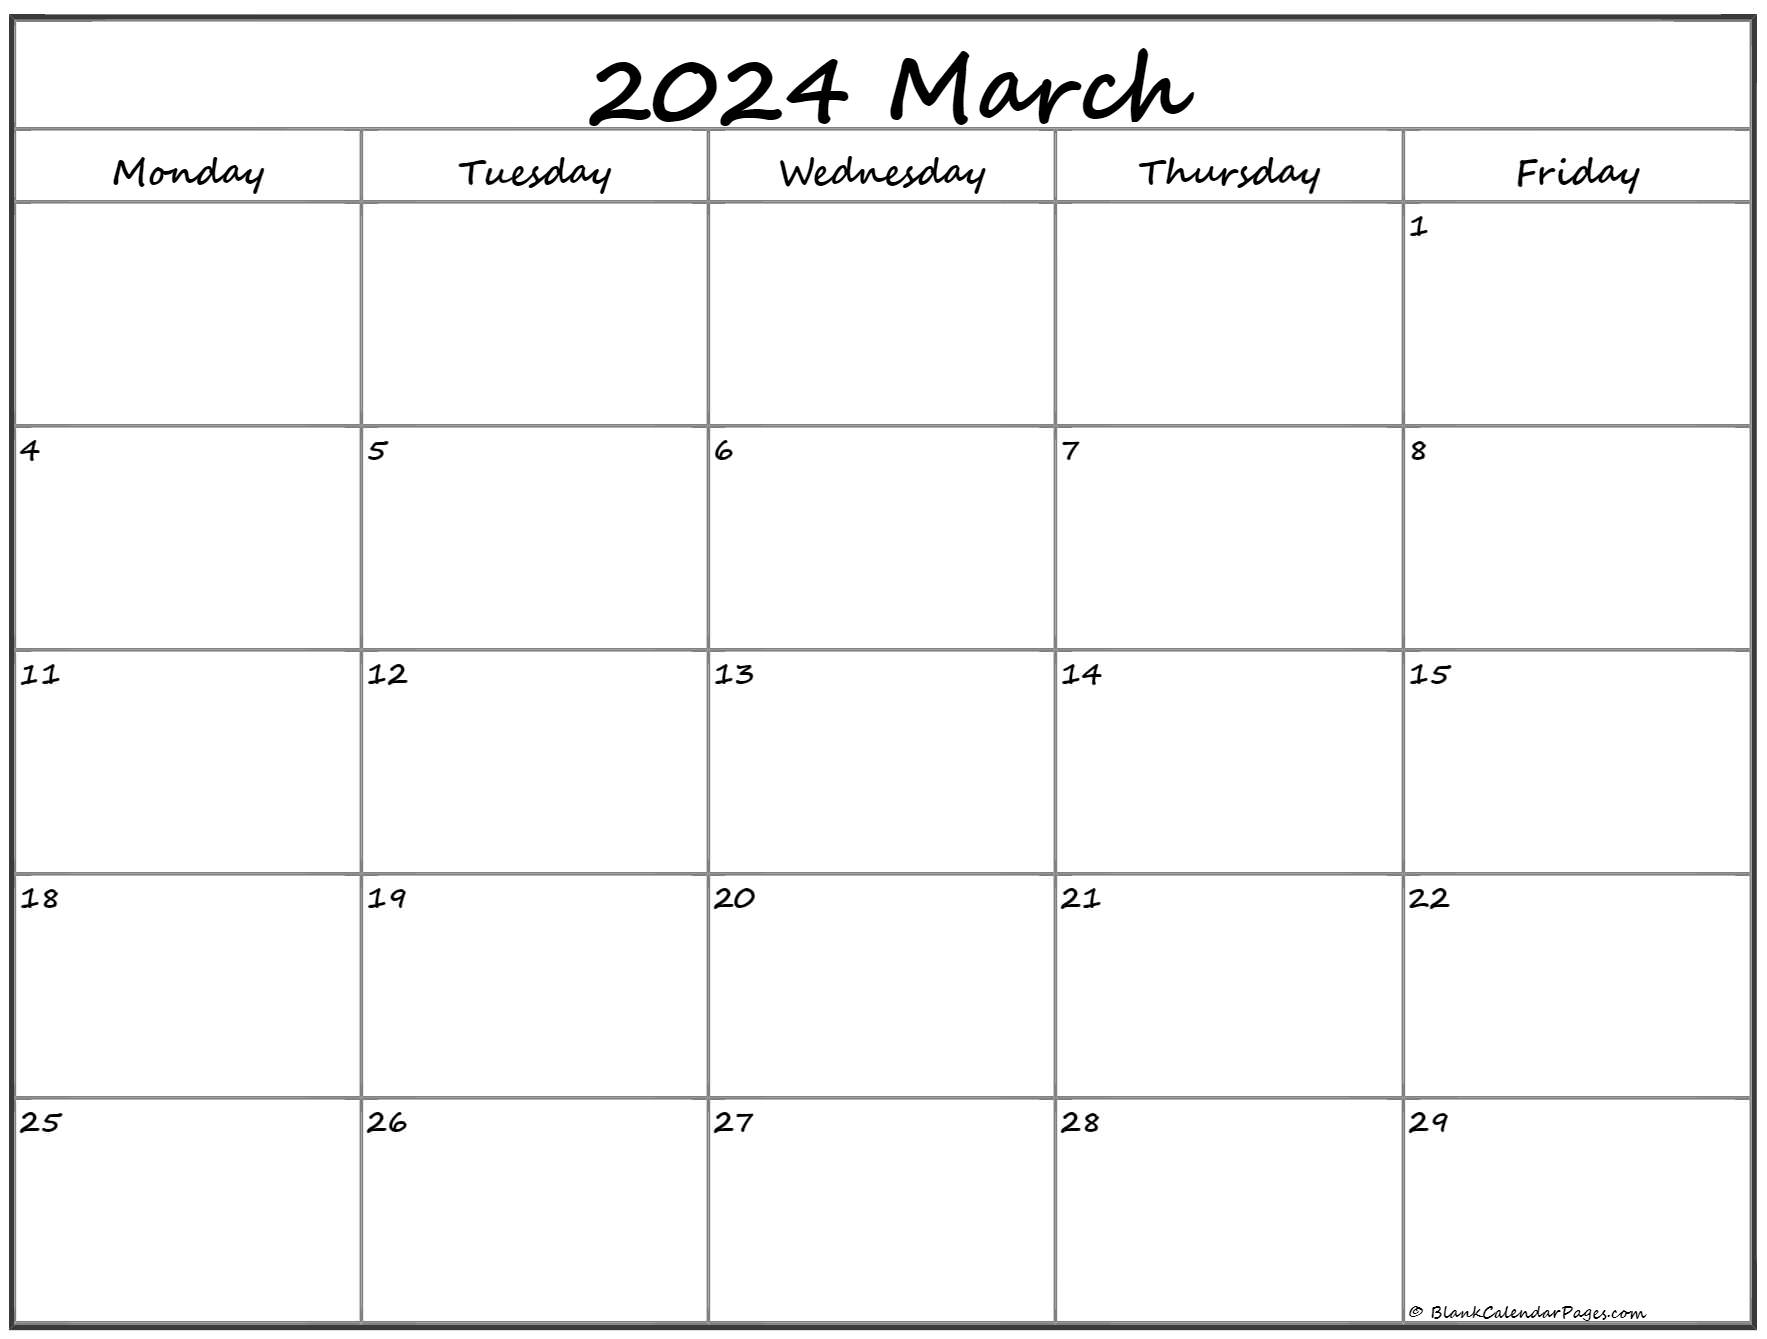 monday-start-2023-calendar-get-calendar-2023-update